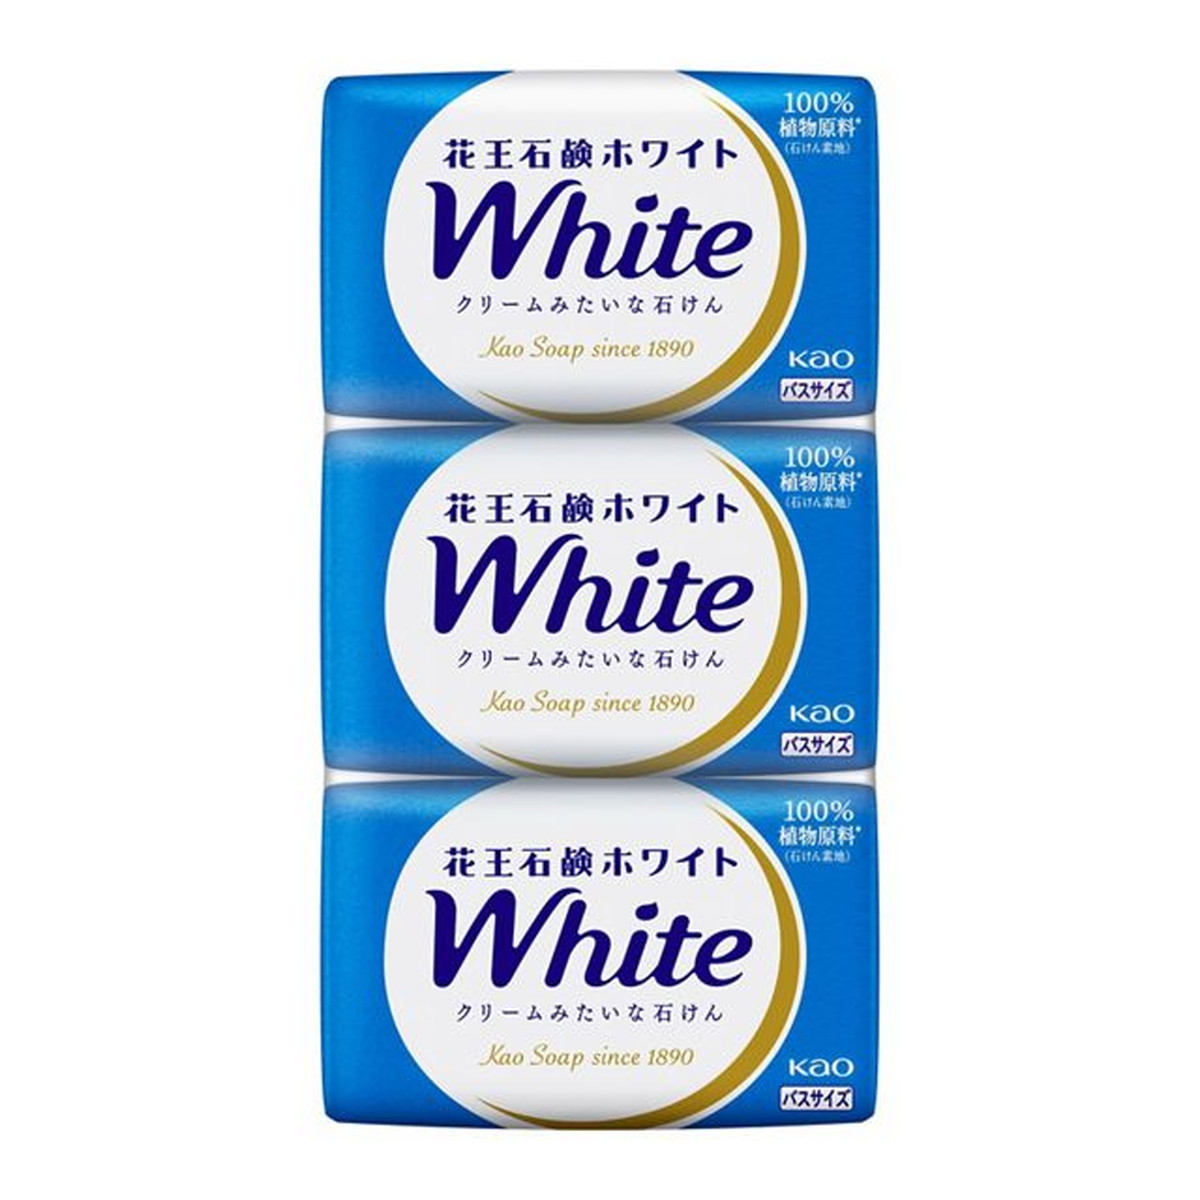 Kao 花王石鹸ホワイト ホワイトフローラルの香り バスサイズ 130g 3コパック×3 花王石鹸ホワイト バスソープ、石鹸の商品画像